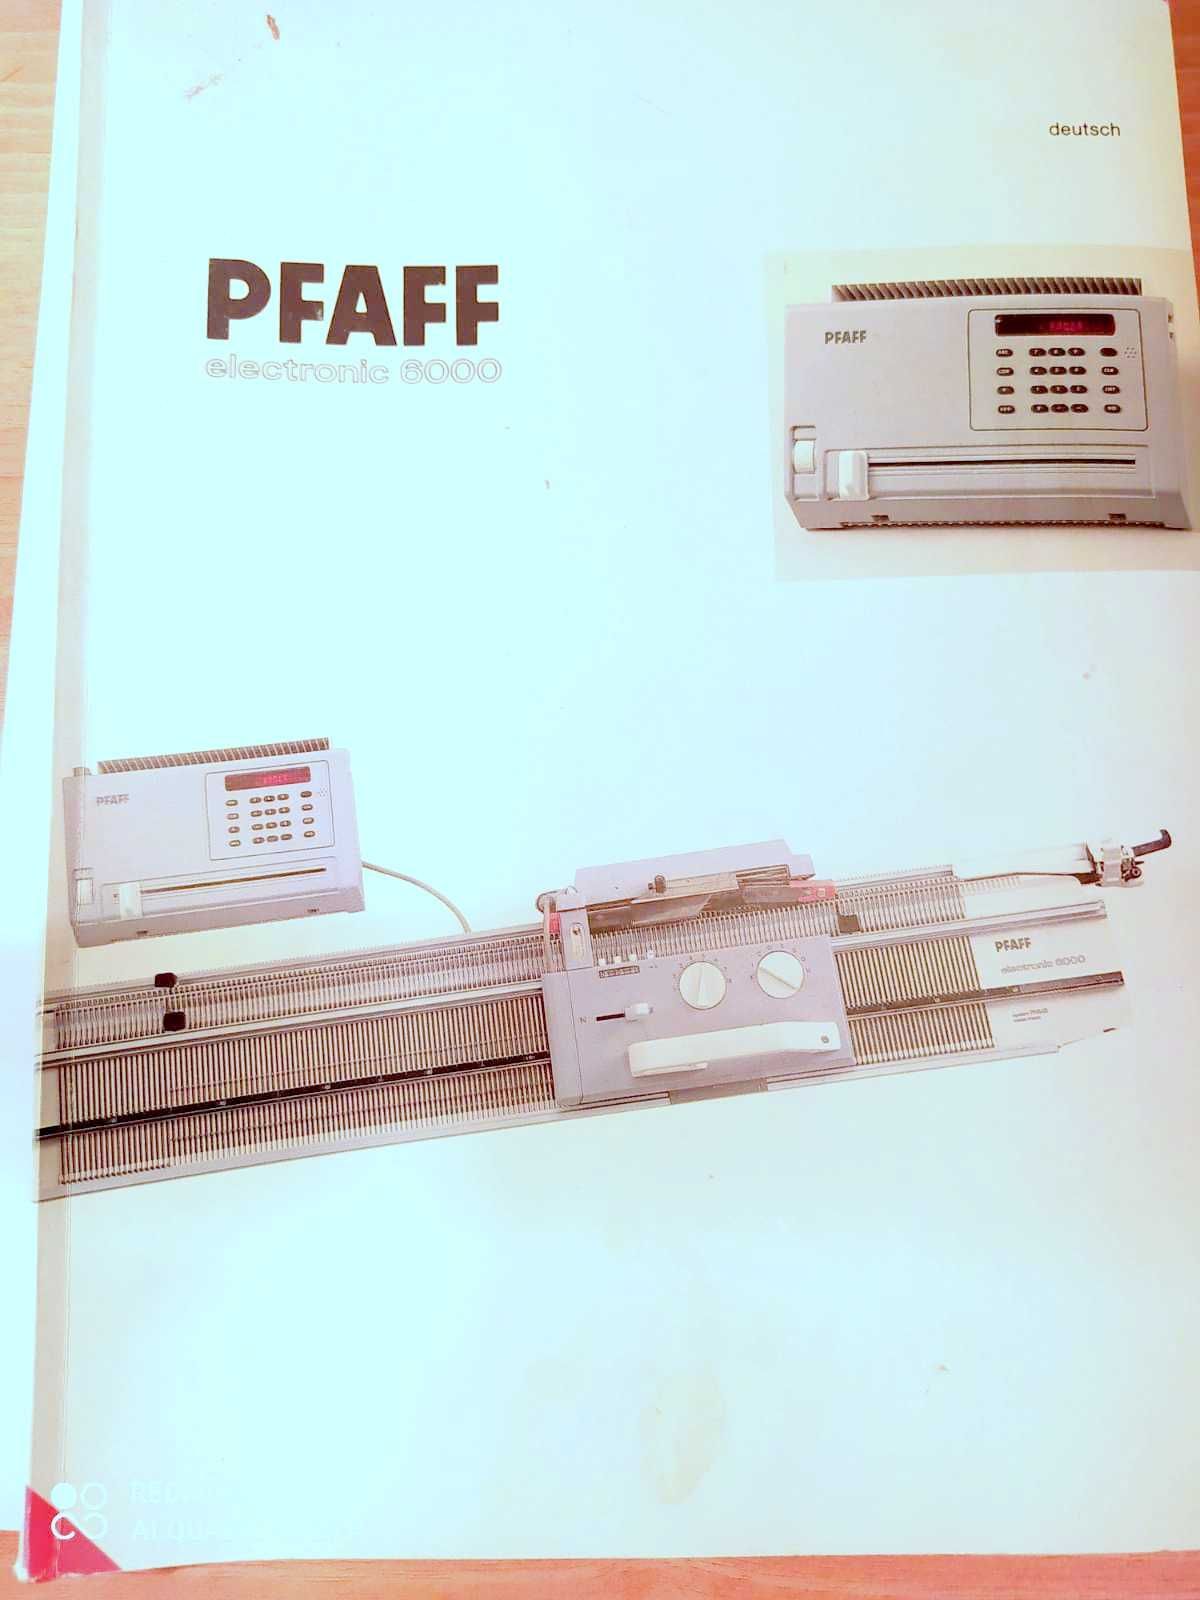 Passap-PFAFF Electronic 6000-instrukcja obslugi w jezyku POLSKIM